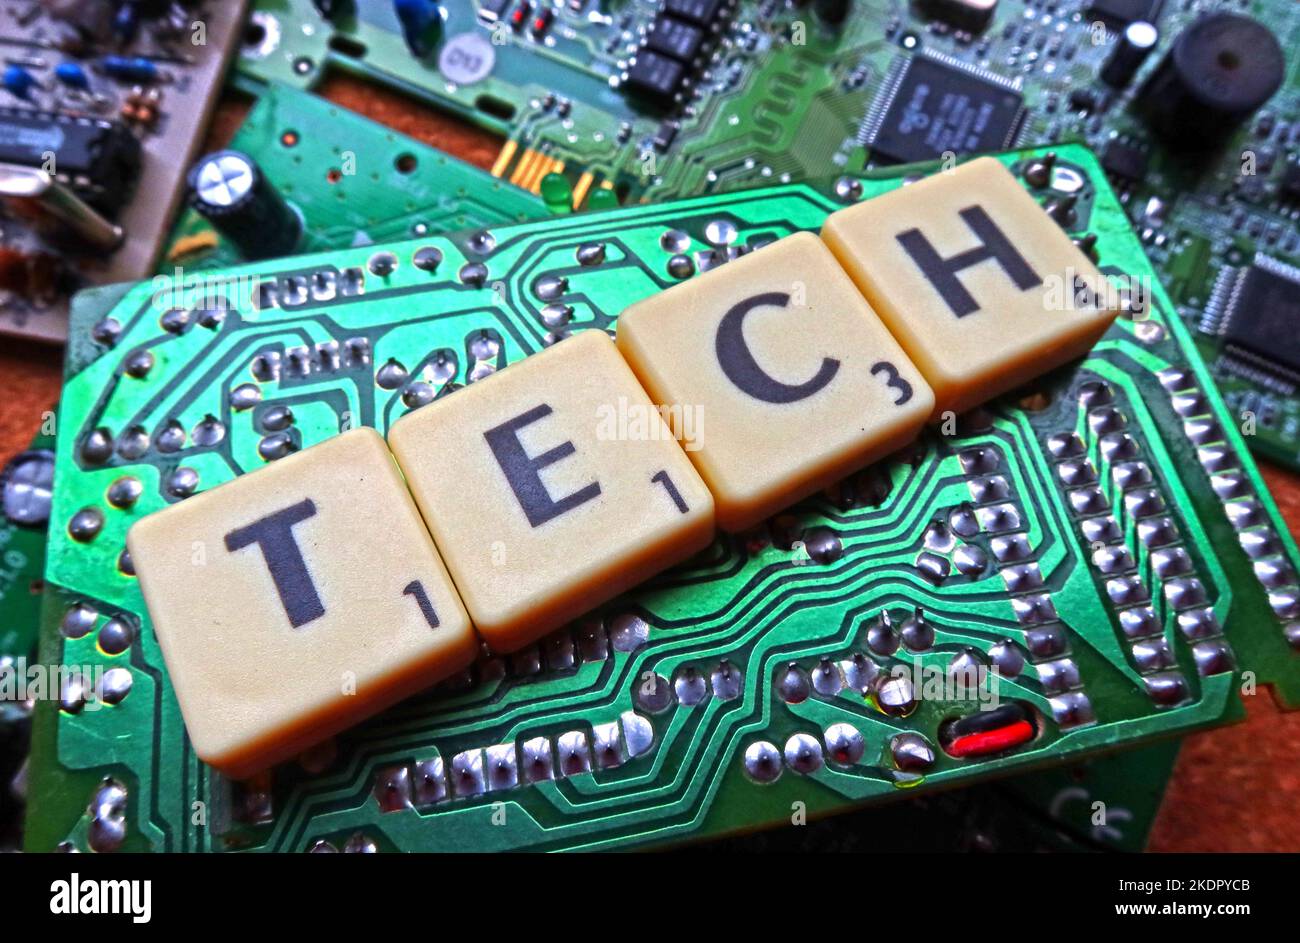 Tech - Scrabble lettres / mot sur un circuit imprimé électronique vert, carte de circuit imprimé Banque D'Images